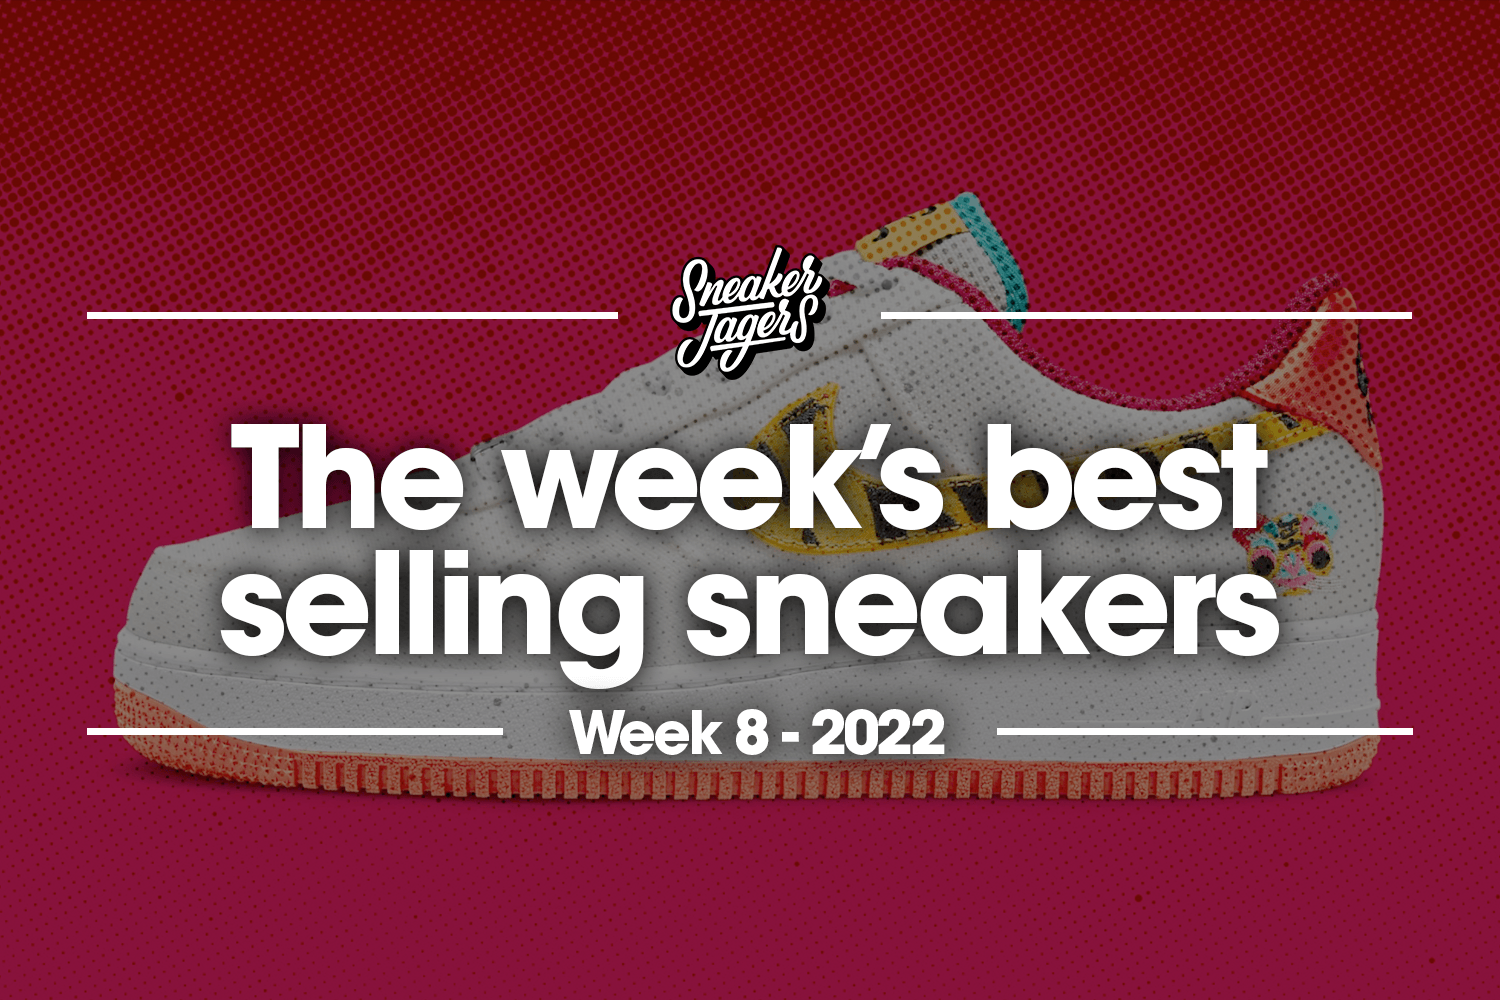 De 5 bestverkochte sneakers van week 8